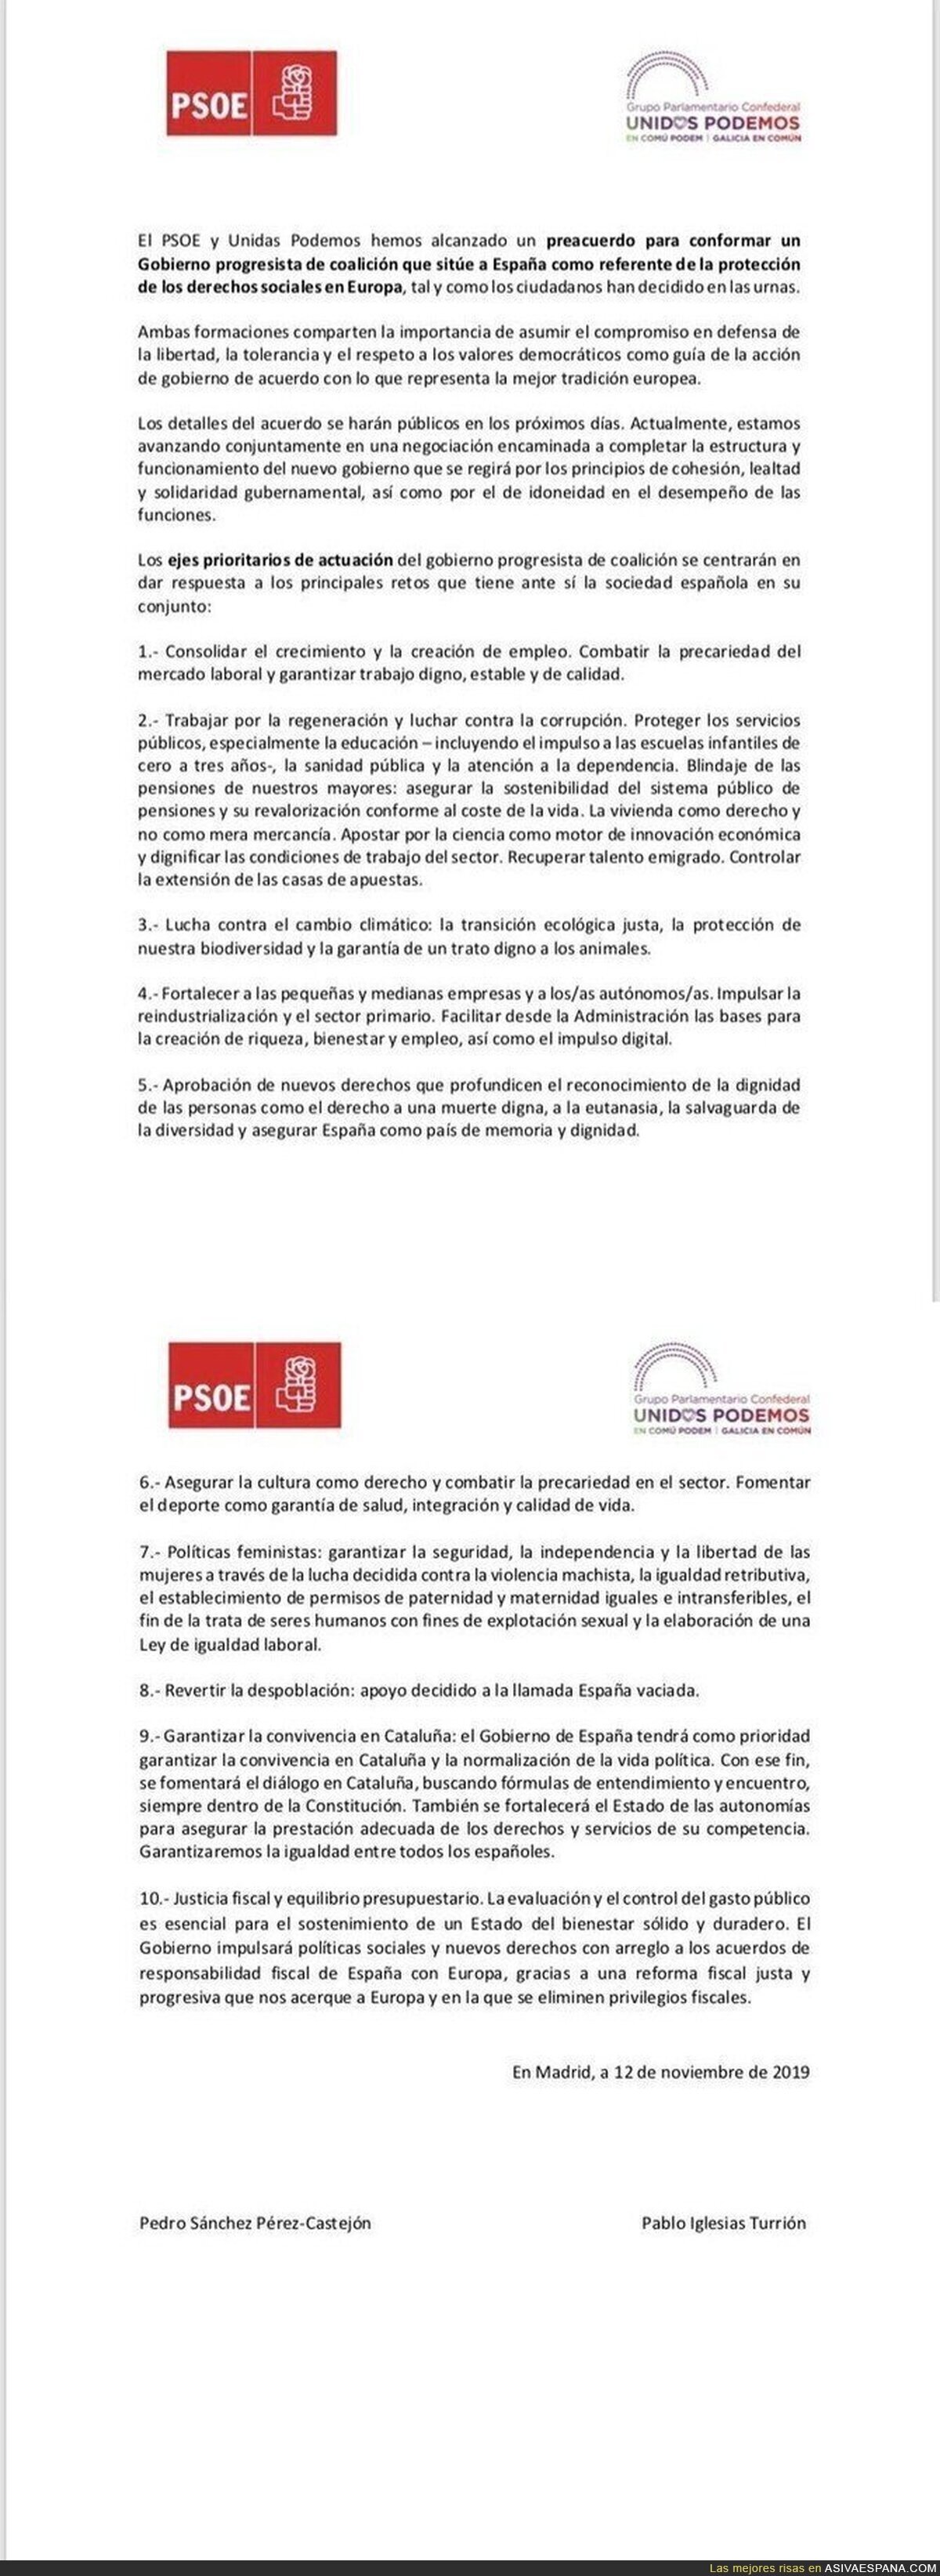 El texto con el que PSOE y Unidas Podemos llegan a un acuerdo